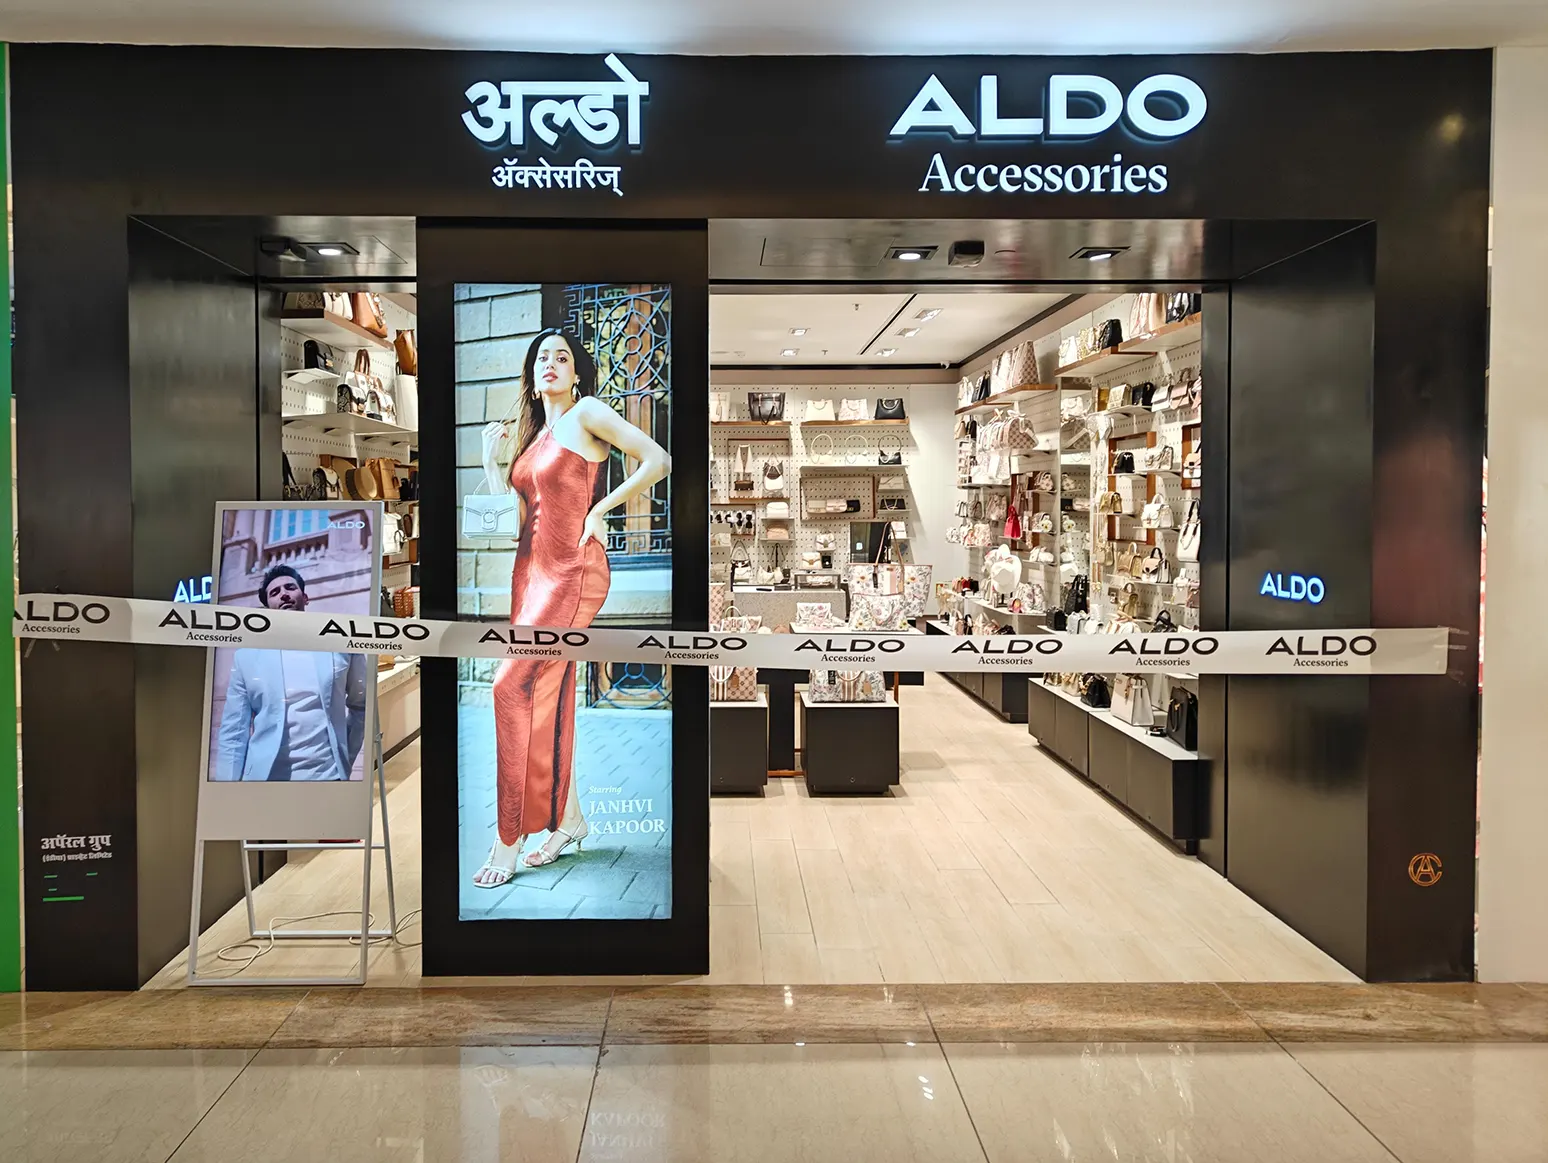 تم افتتاح متجر ألدو إكسسوارات في انوربيت مول في مومباي الهند